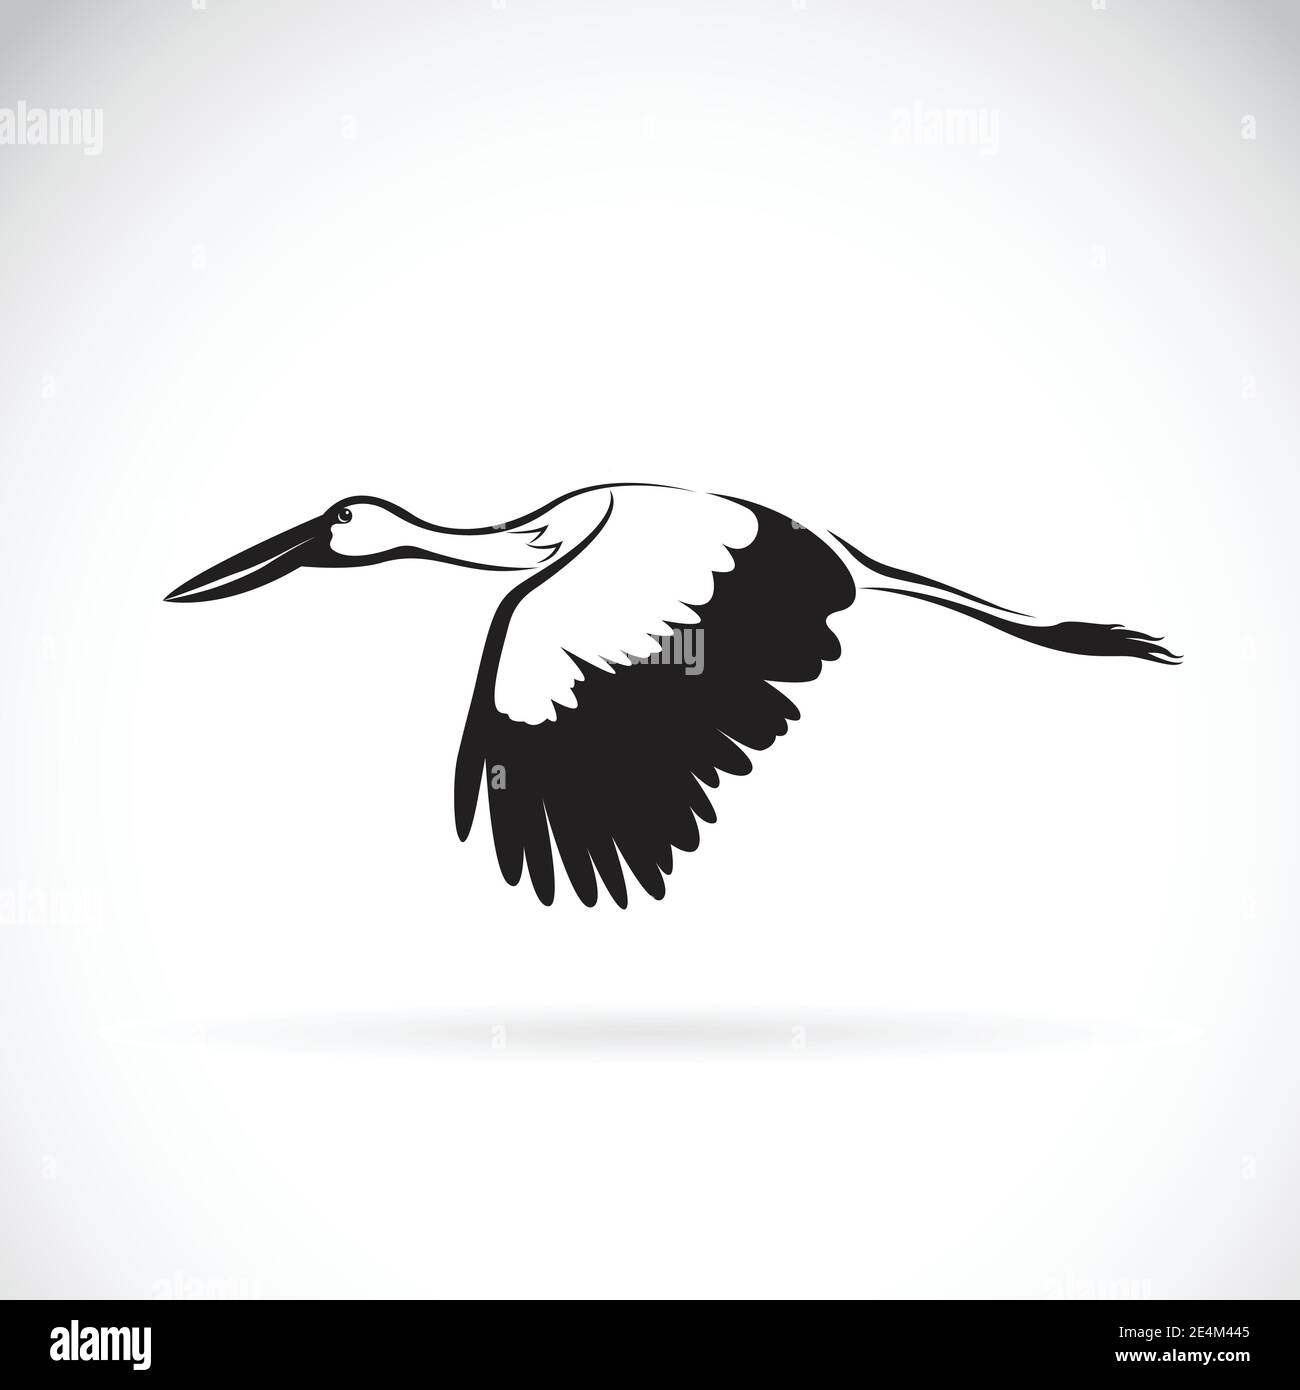 Vector of stork flying on white background. Stork Icon. Bird Design. Easy editable layered vector illustration. Stock Vector